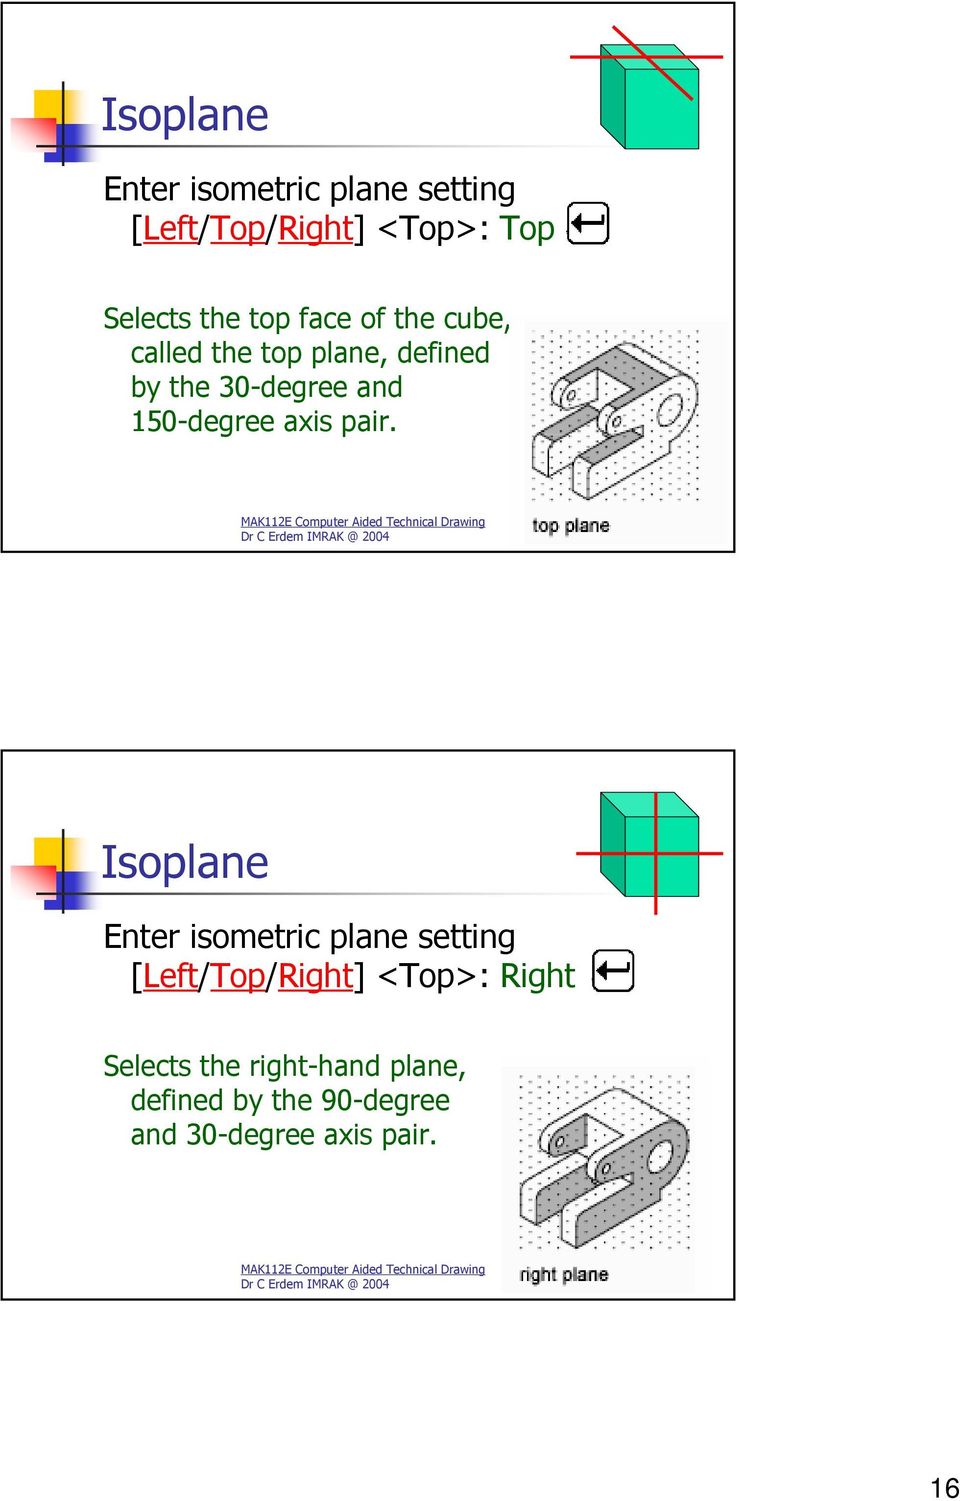 Dr C Erdem IMRAK @ 2004 31 Isoplane Enter isometric plane setting [Left/Top/Right] <Top>: